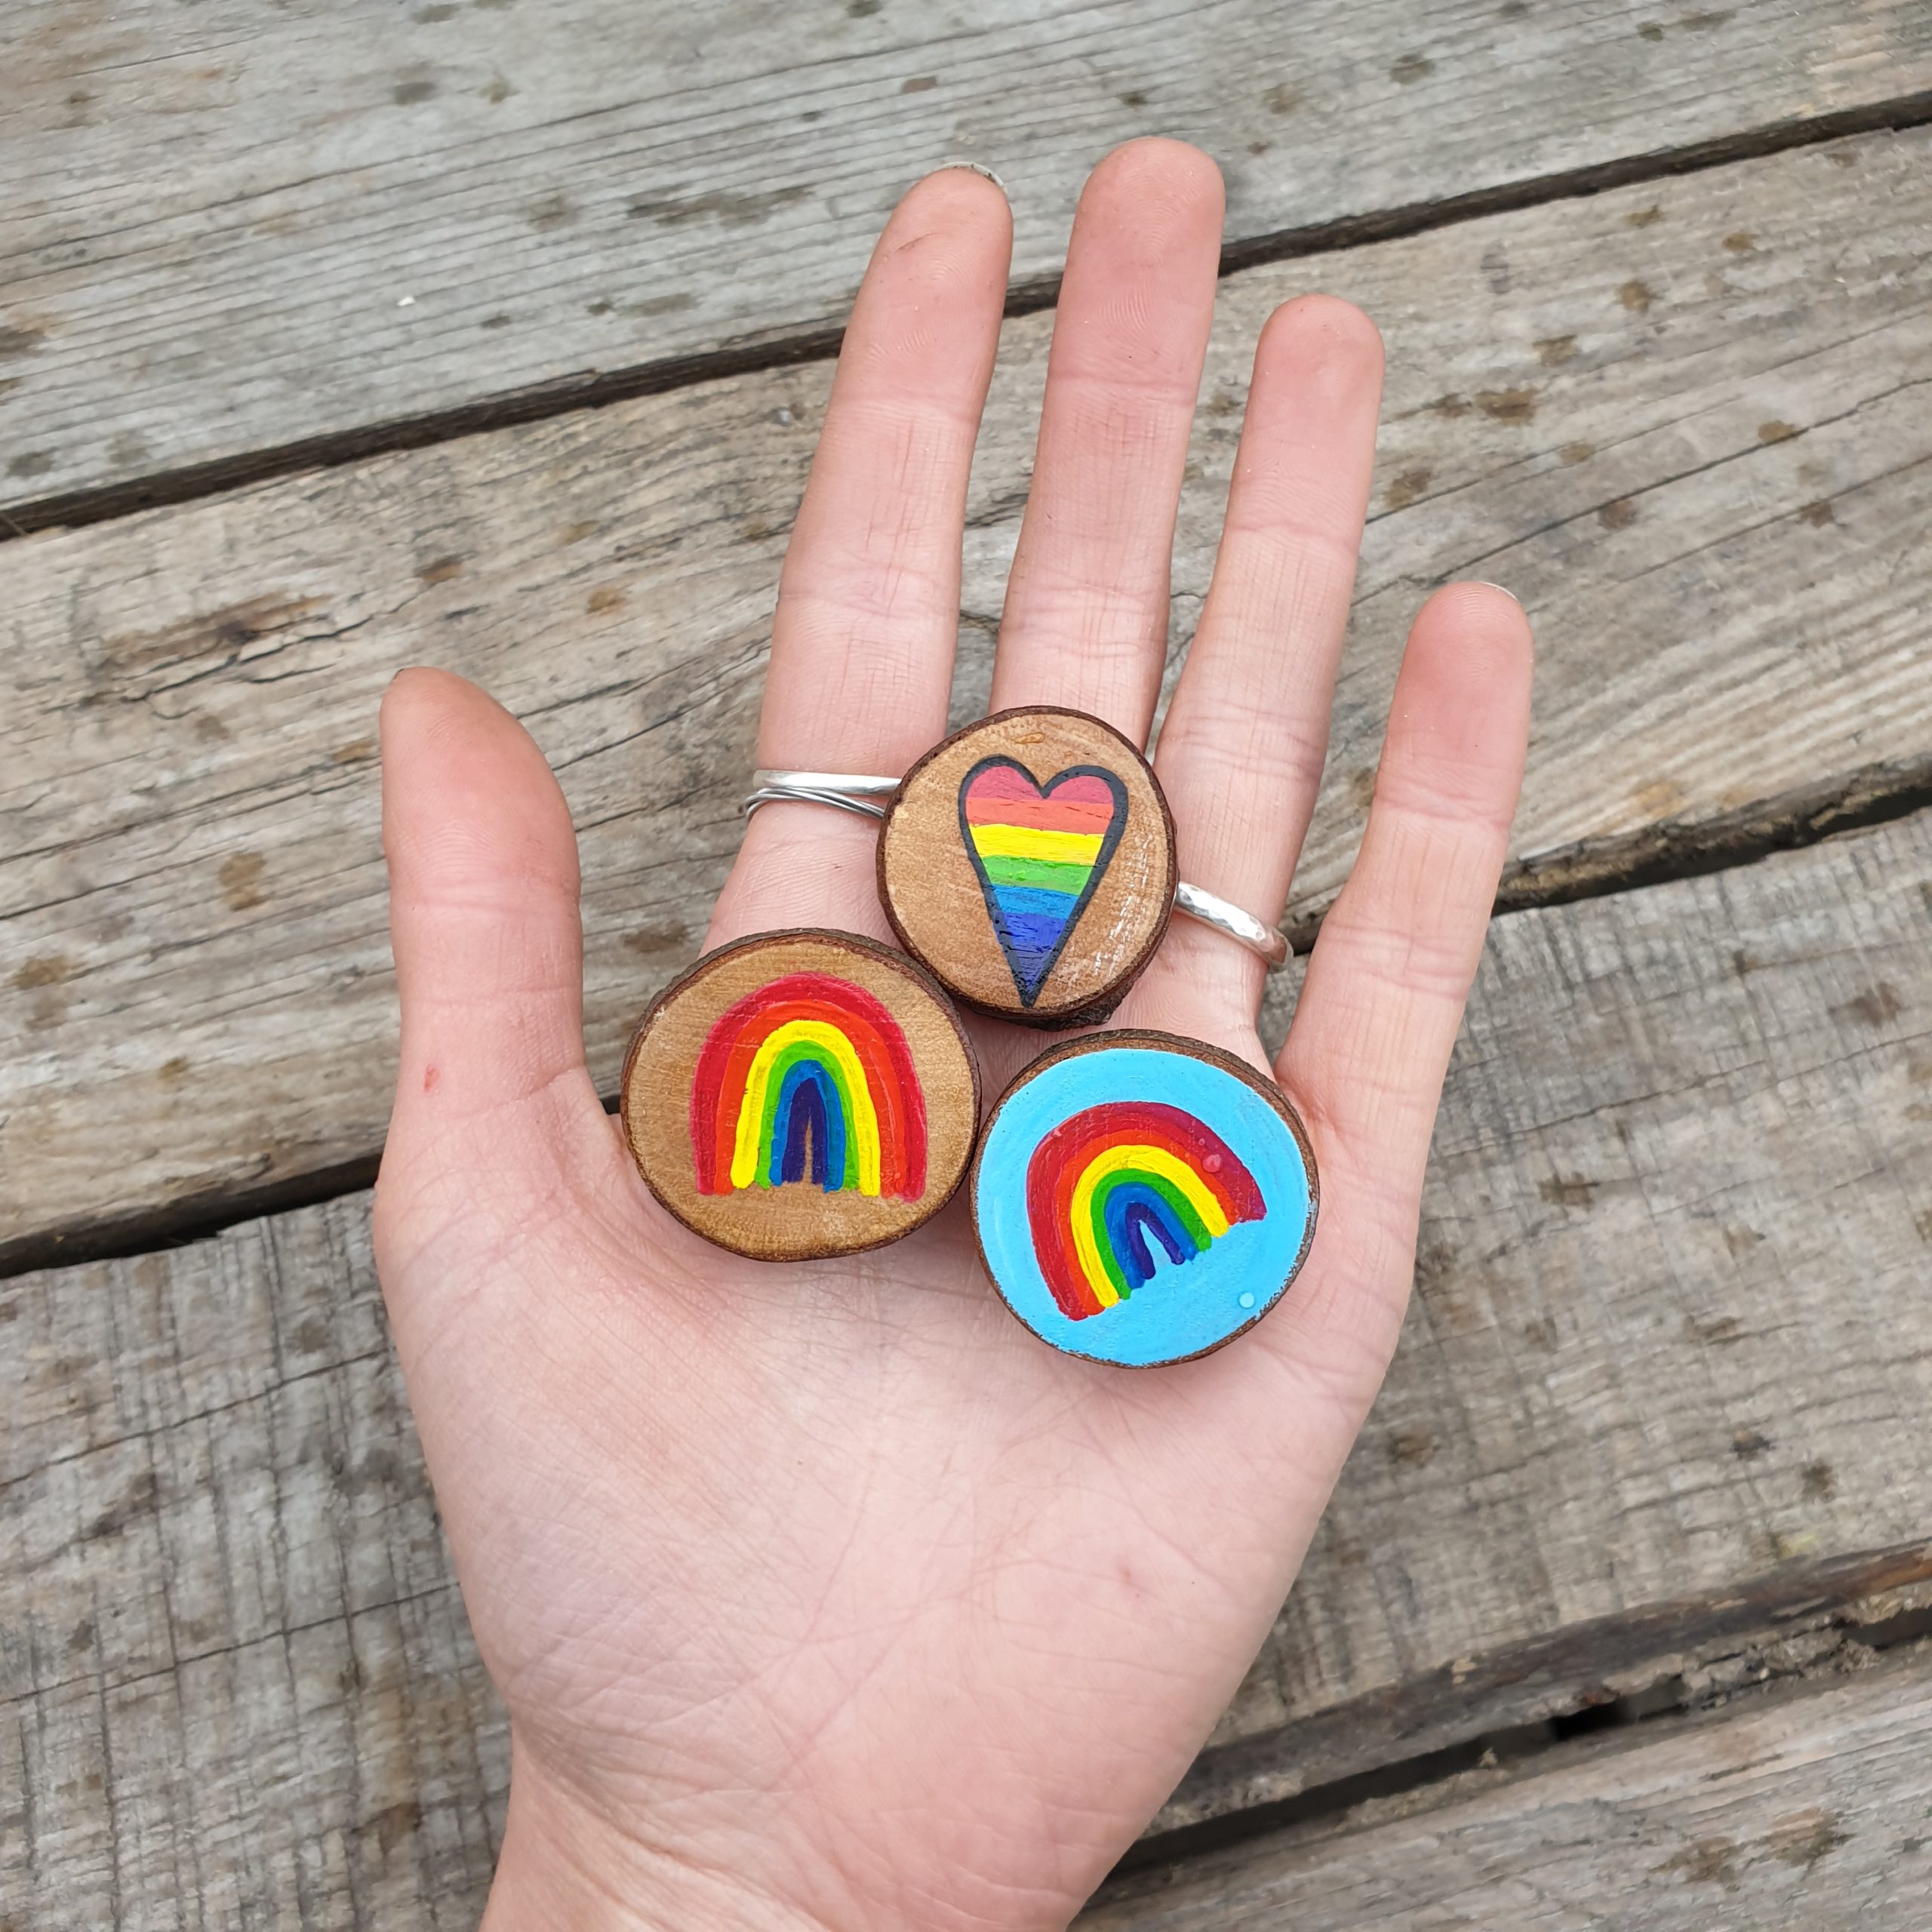 Sophias Illustration, Handmade Small Wood Slice Rainbow Brooch Pin Badge